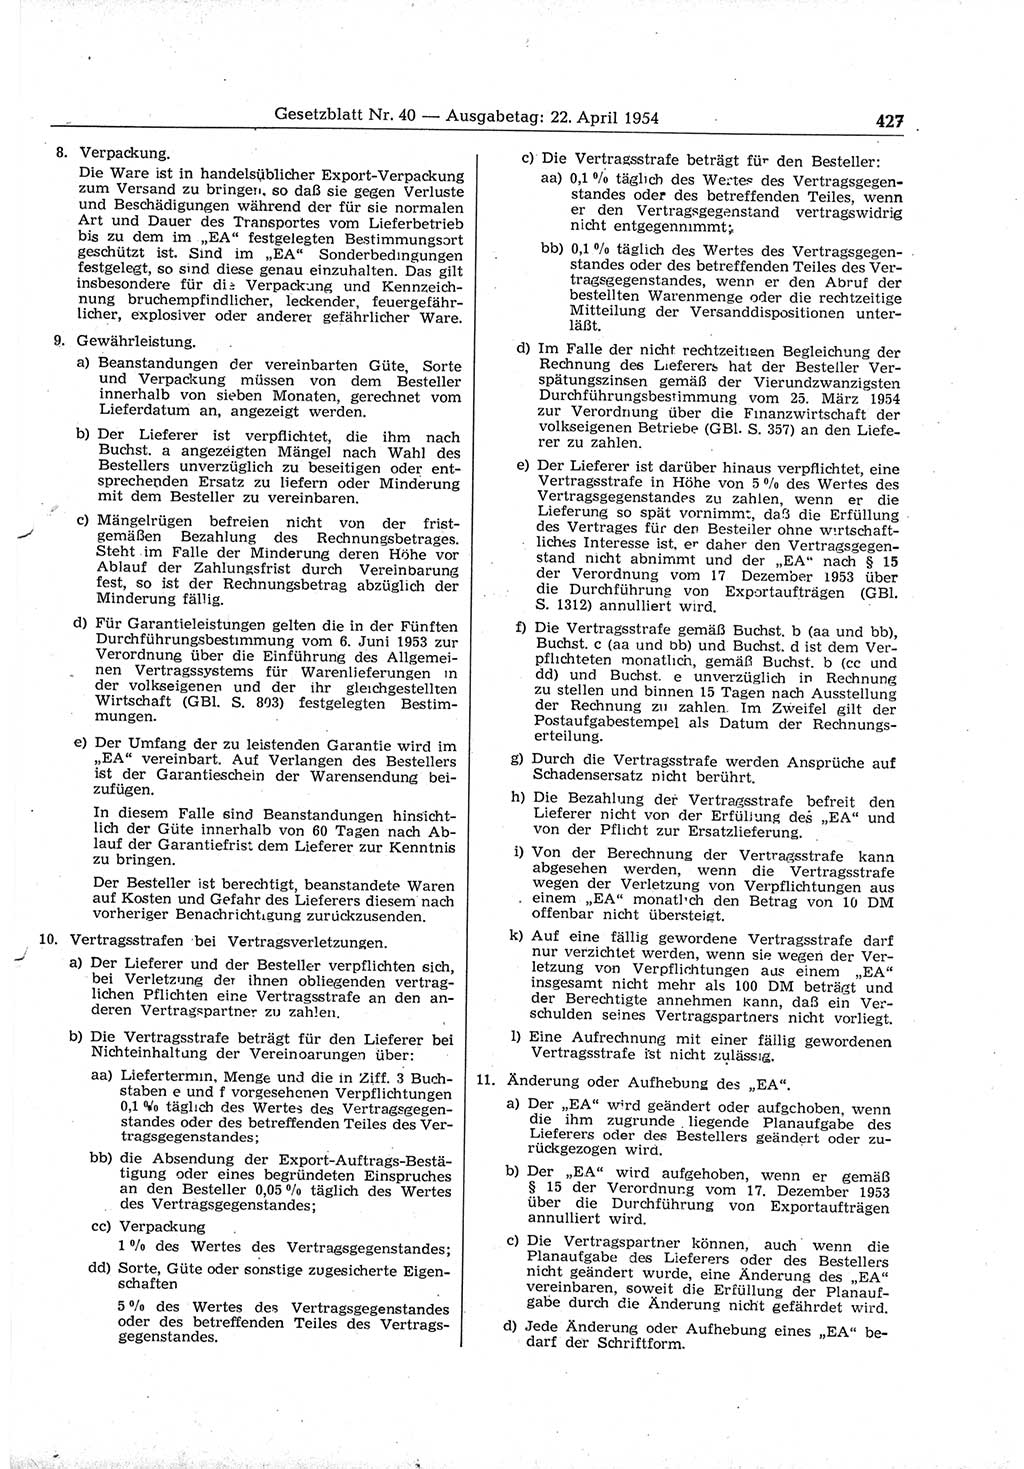 Gesetzblatt (GBl.) der Deutschen Demokratischen Republik (DDR) 1954, Seite 427 (GBl. DDR 1954, S. 427)